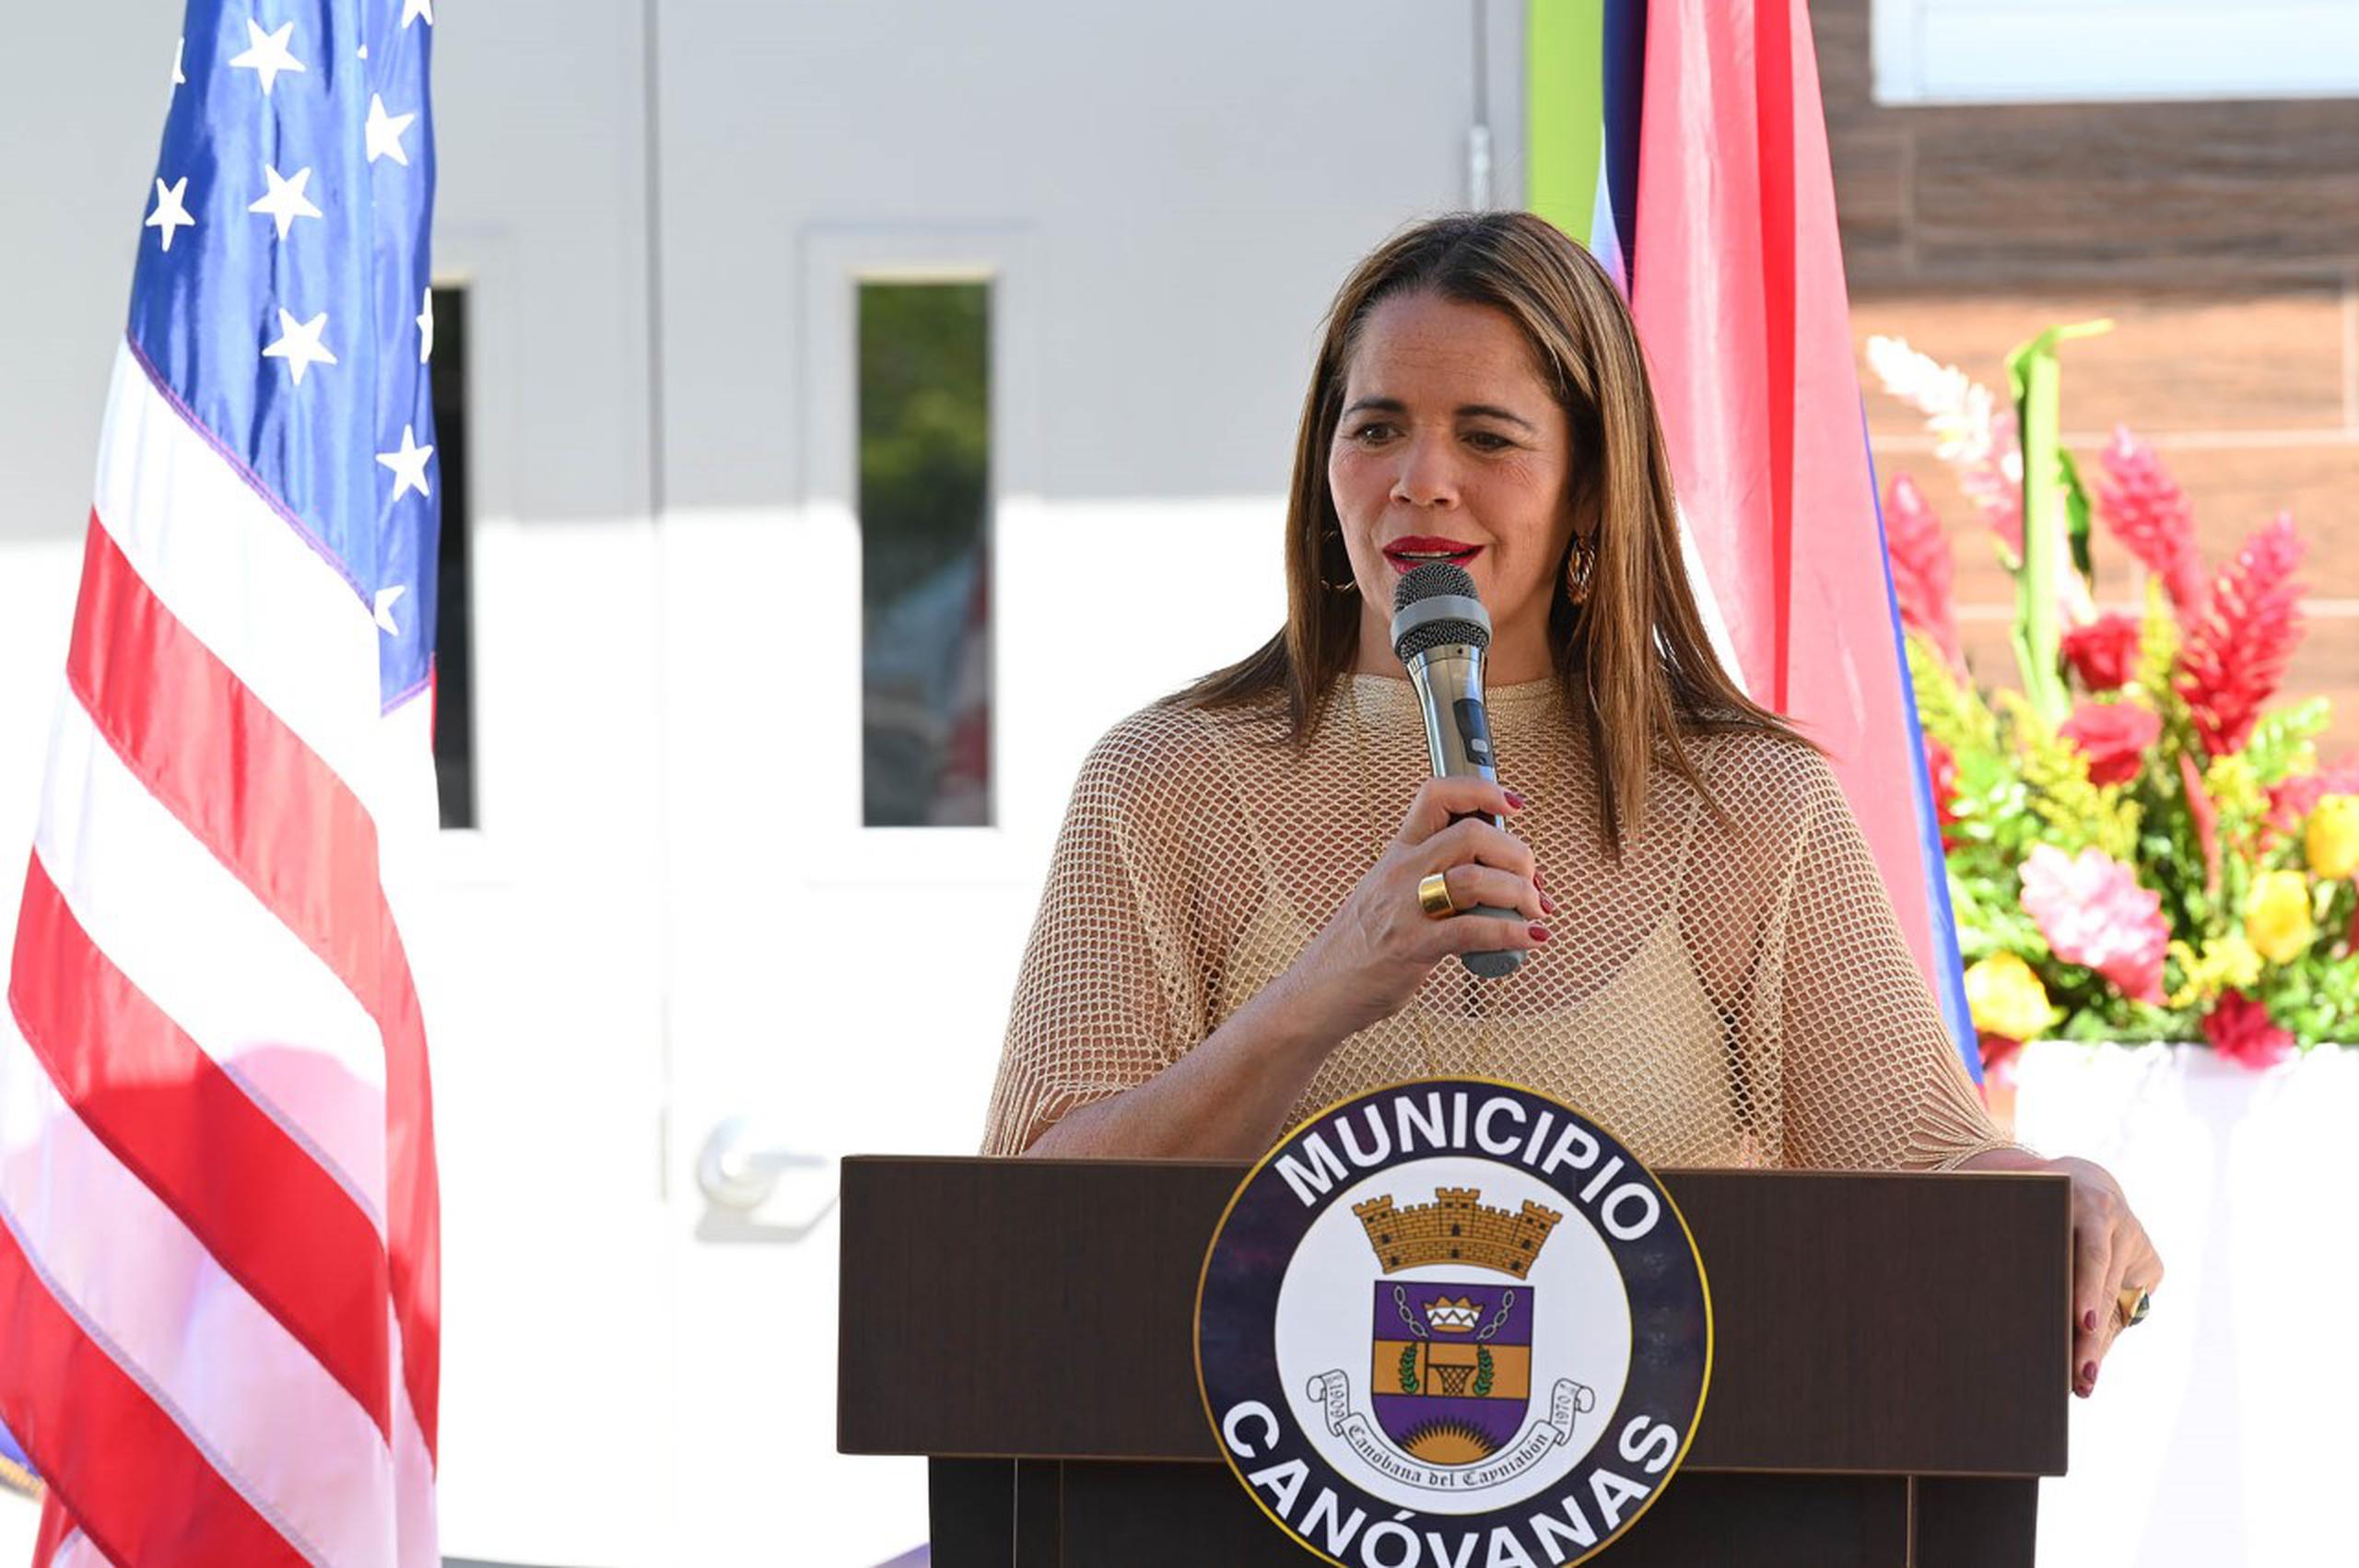 La alcaldesa de Canóvanas, Lornna Soto, indicó que los proyectos han impactado prácticamente a todas las comunidades del municipio.